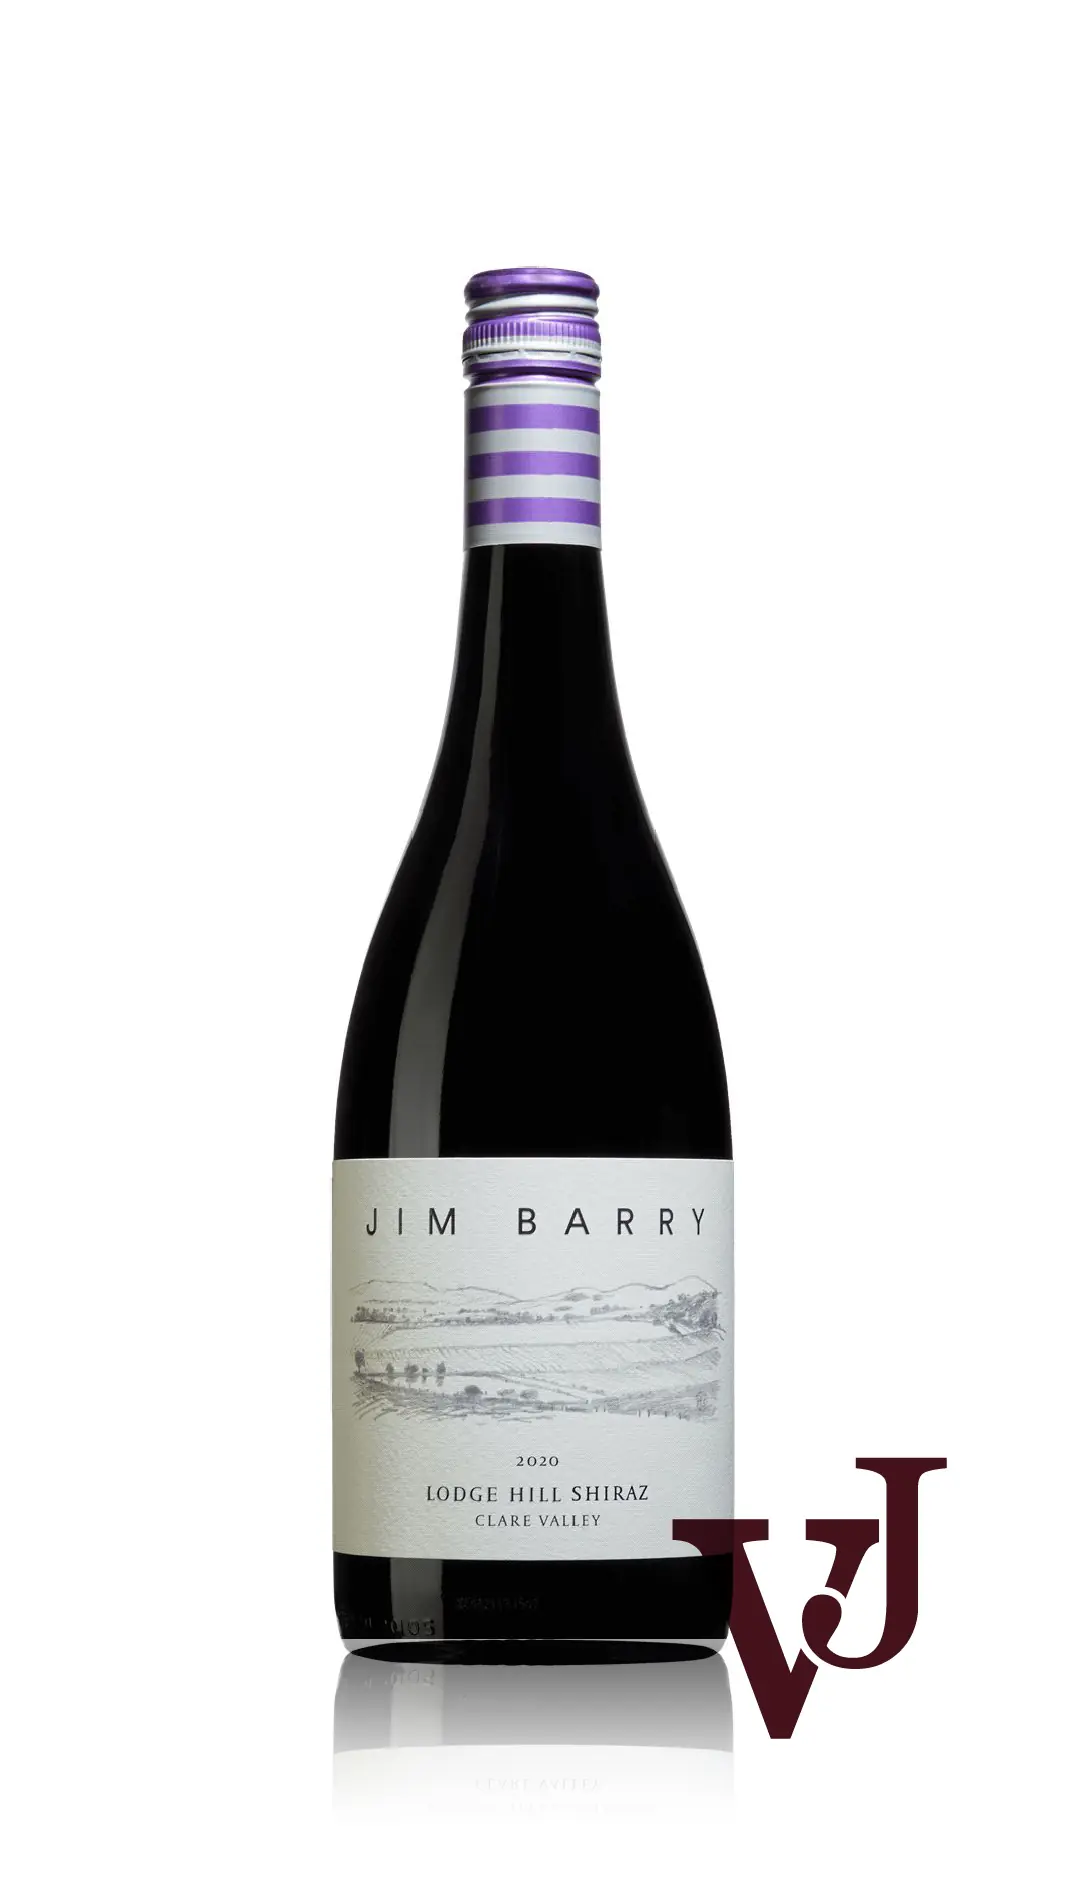 Rött Vin - Jim Barry Lodge Hill Shiraz 2020 artikel nummer 9228701 från producenten Jim Barry från området Australien - Vinjournalen.se